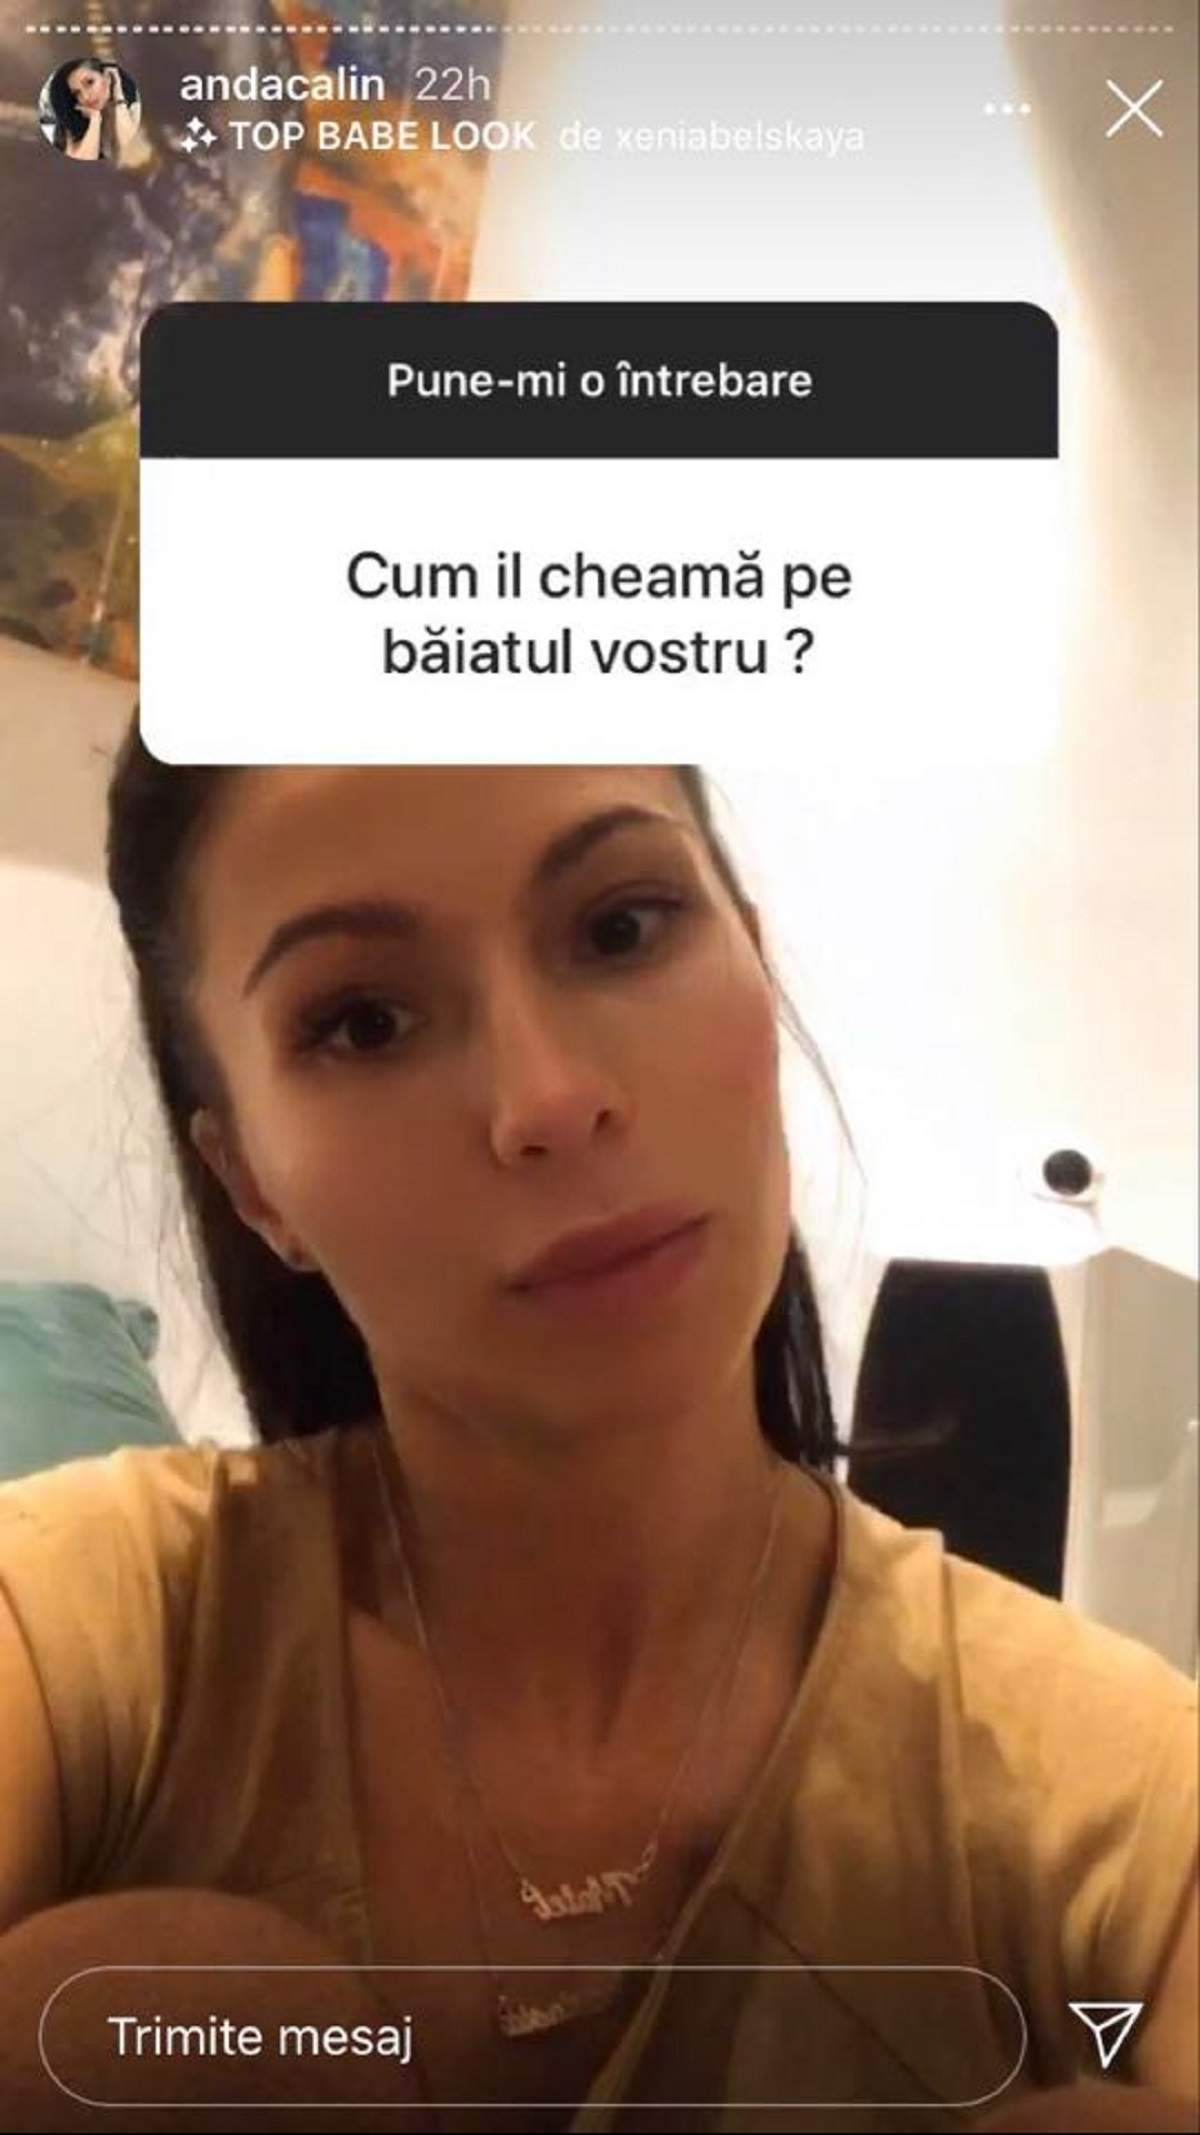 Anda Călin le răspunde fanilor pe Instagram. Vedeta poartă un tricou crem.